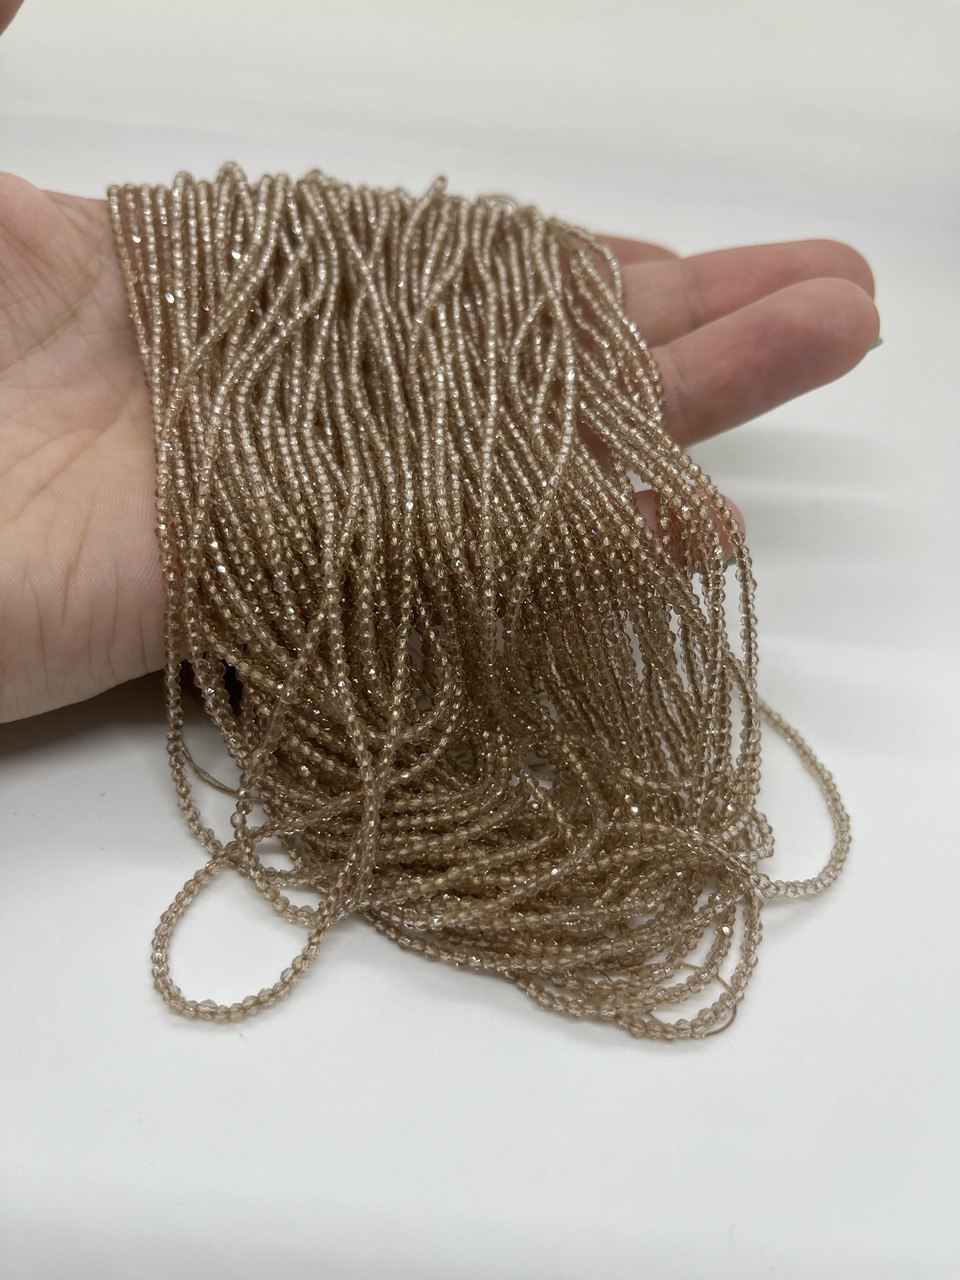 Бусины Циркон натуральный ювелирной огранки размер 2мм цвет бежевый